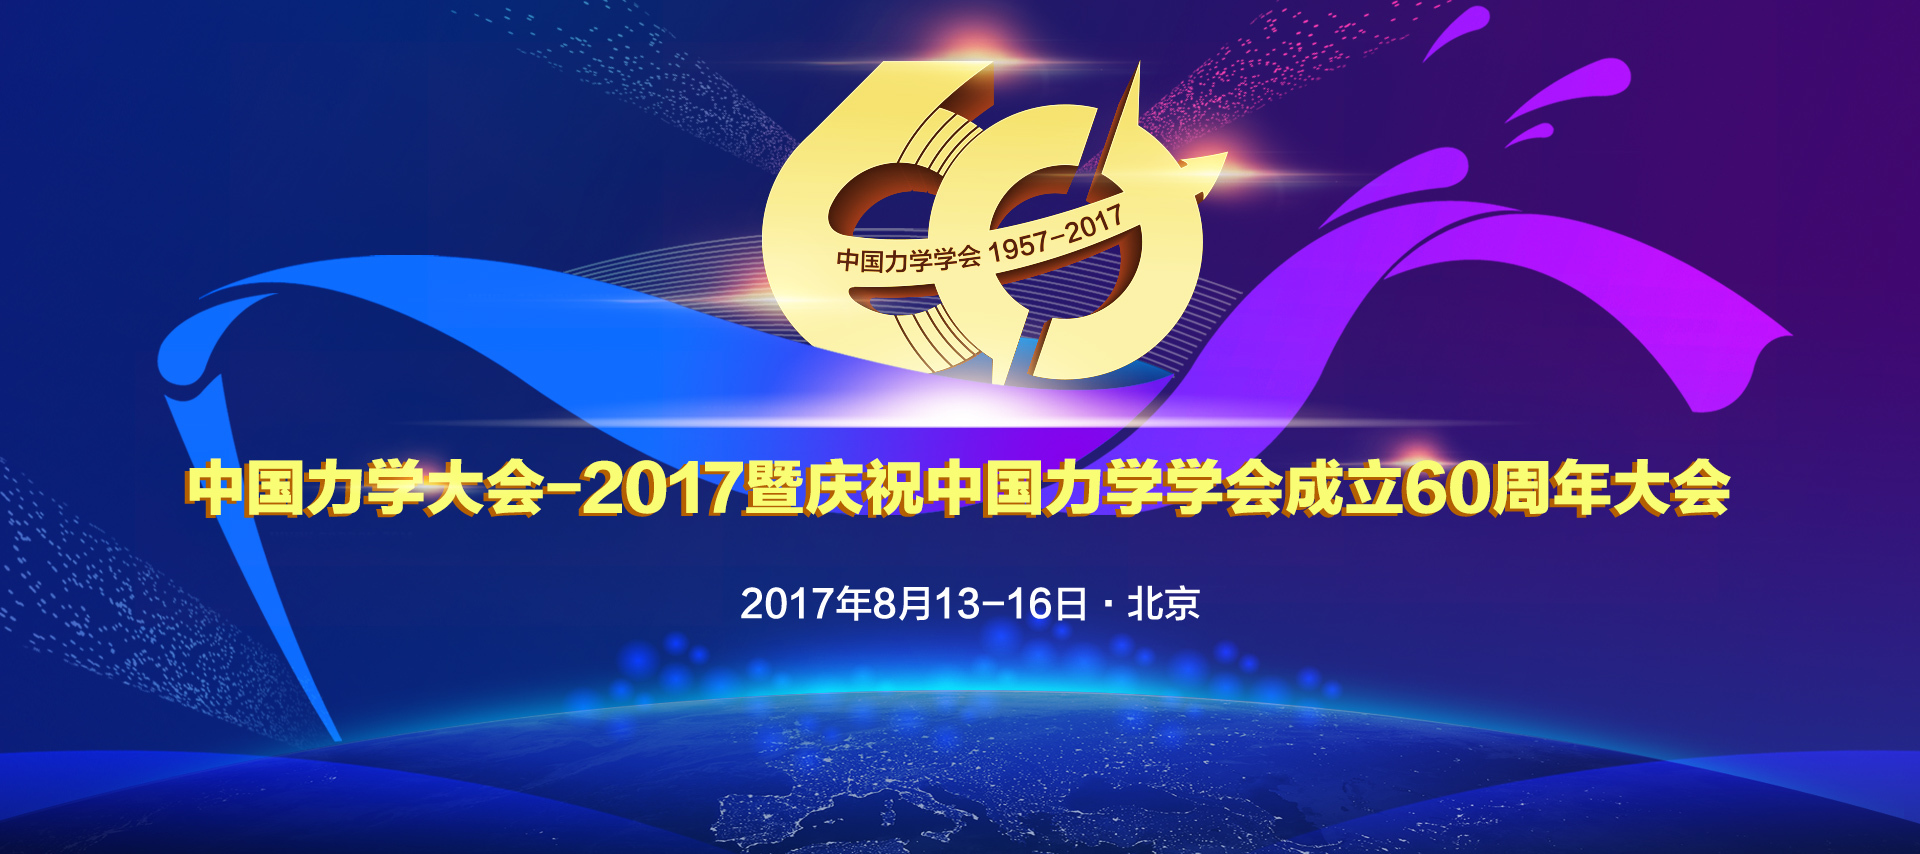  中国力学大会-2017暨庆祝中国力学学会成立60周年大会